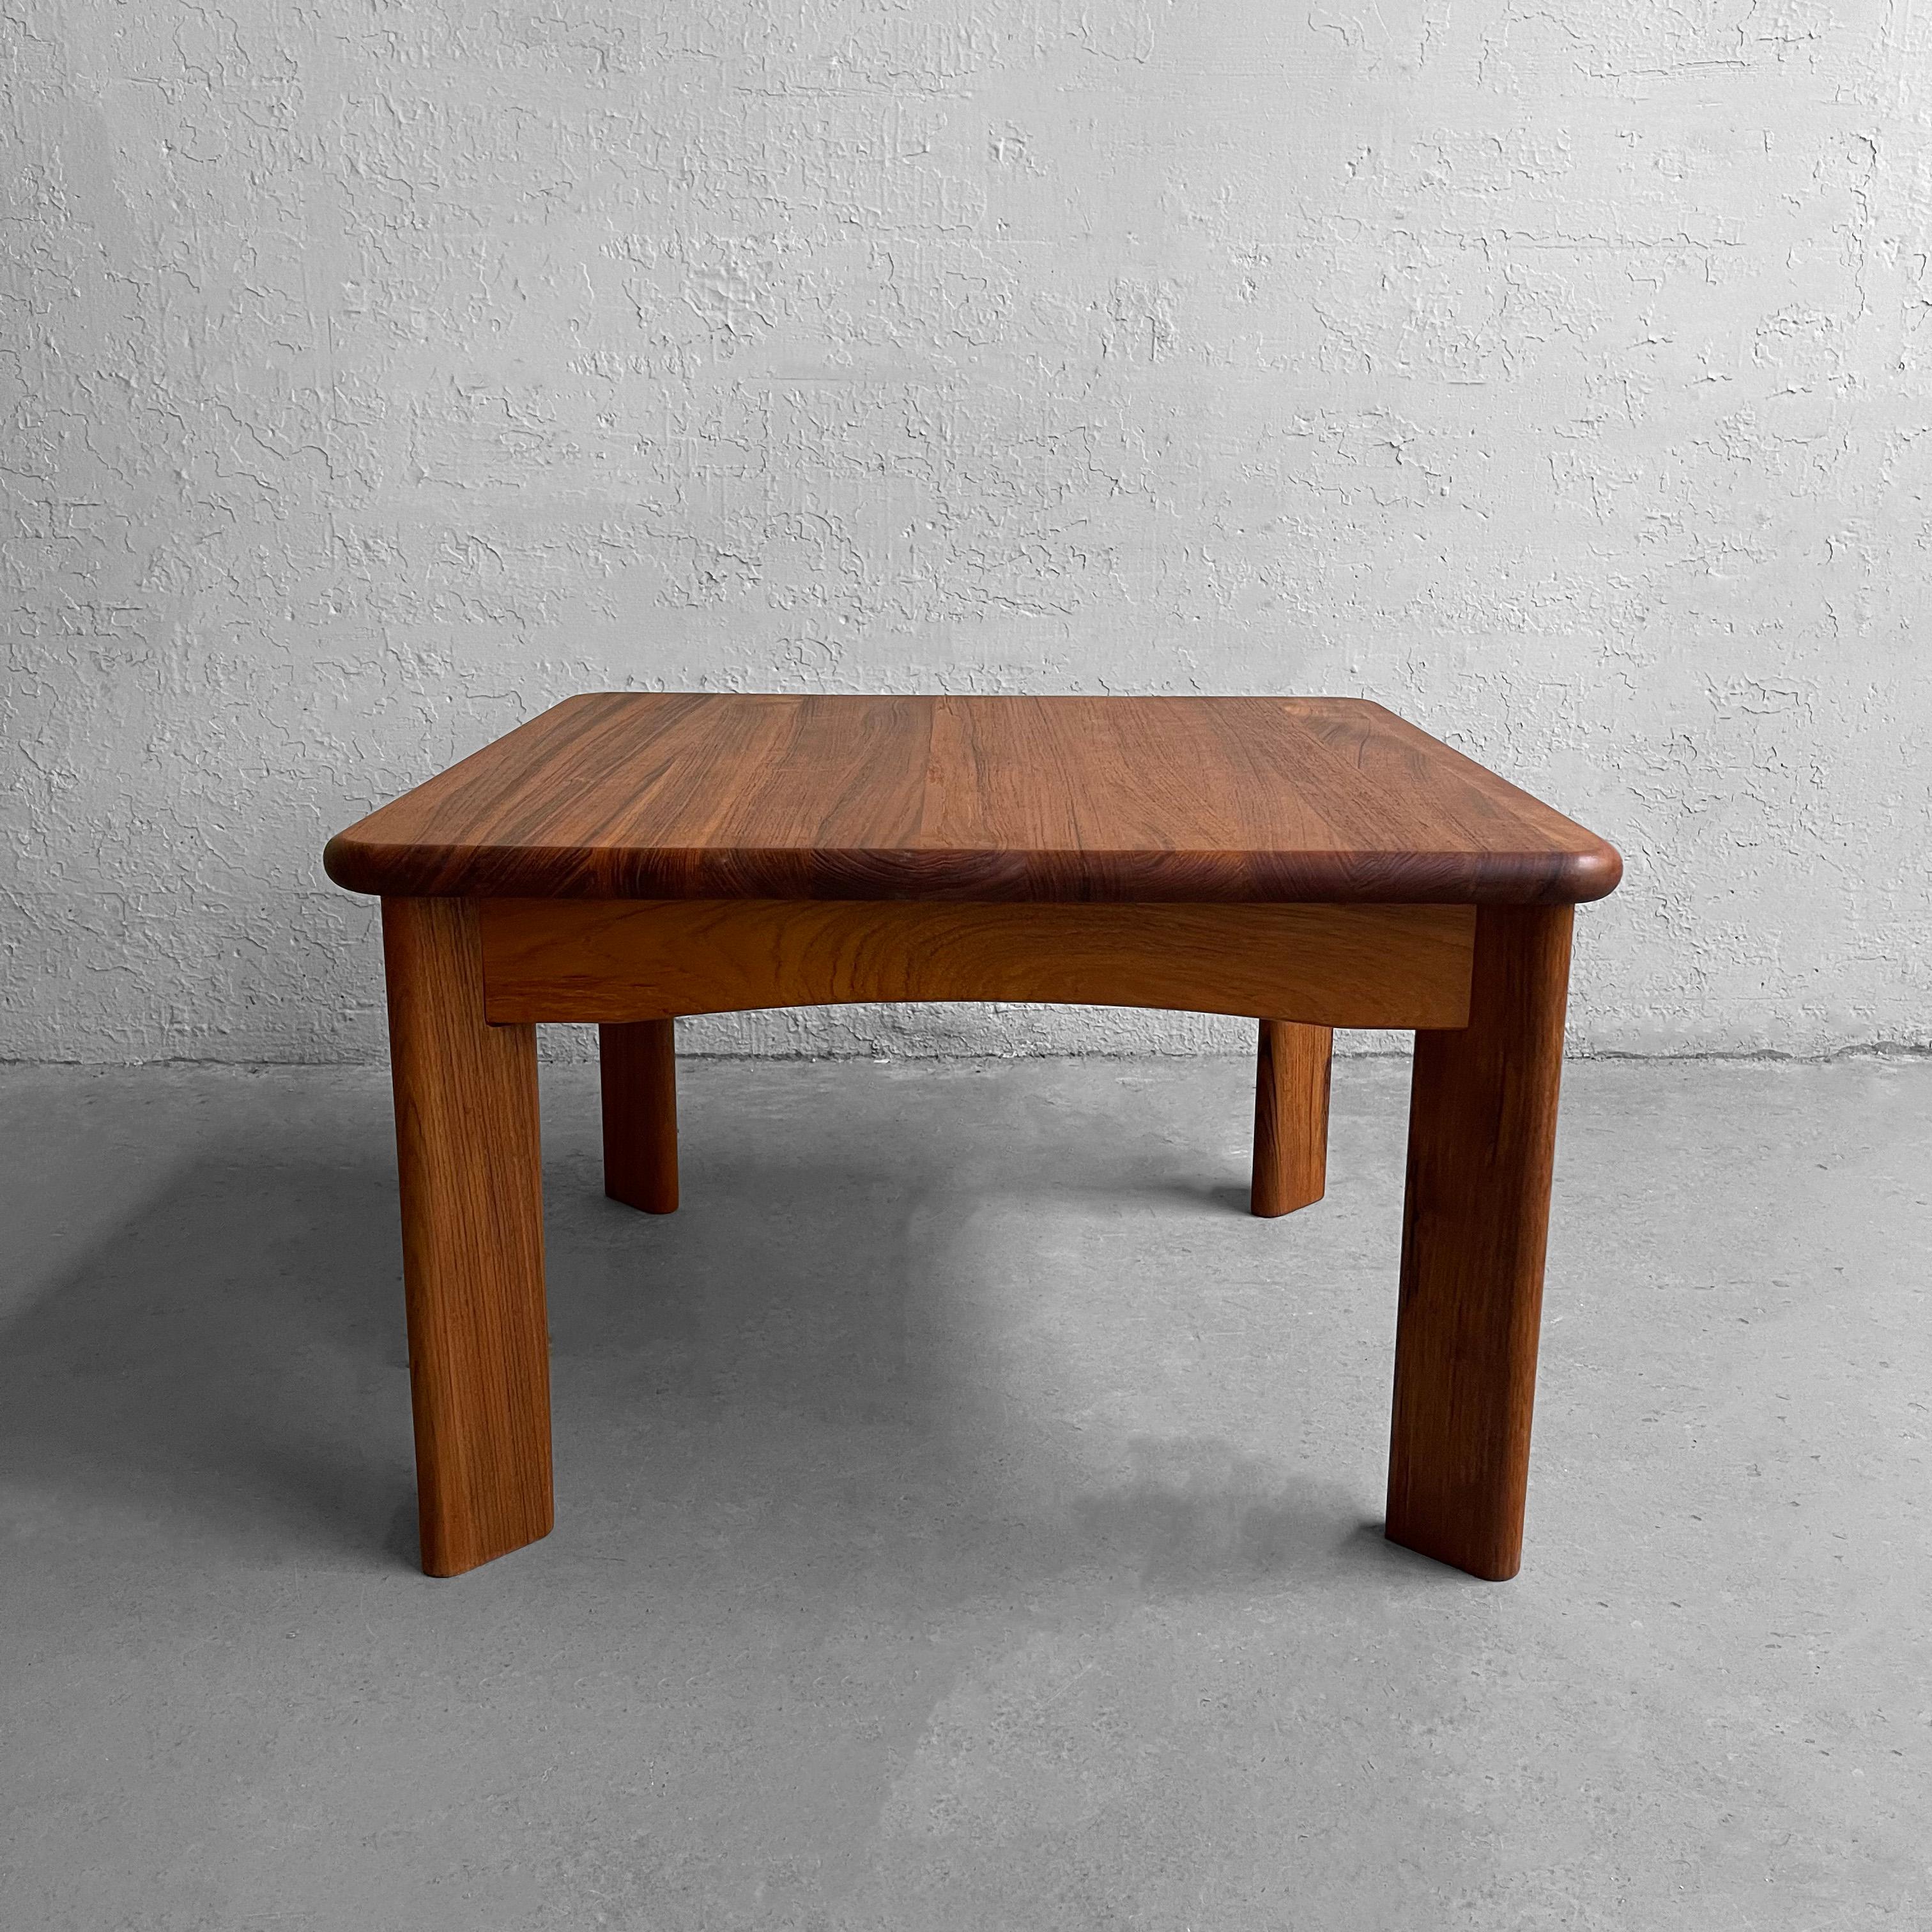 Table d'appoint ou table basse carrée en teck massif, de style scandinave, attribuée à Göte Möbler Nässjö, Suède, avec des pieds angulaires, un plateau à bord arrondi et un rebord profilé. Cette table peut être utilisée comme table d'appoint ou